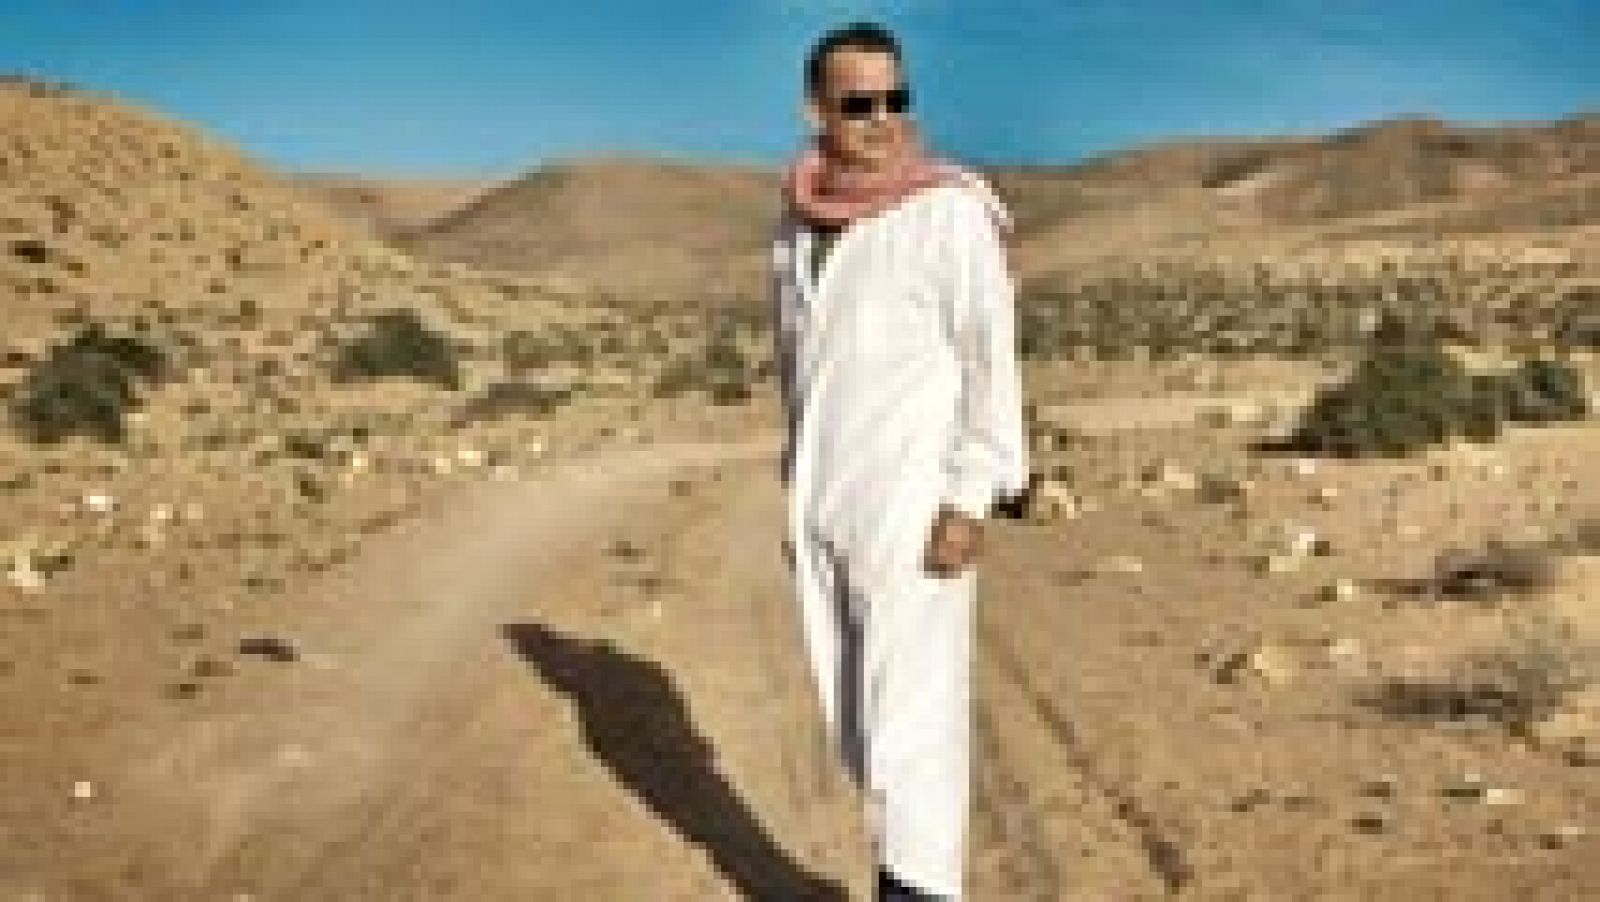 Rtve.es te ofrece este video exclusivo sobre las características del personaje de Tom Hanks